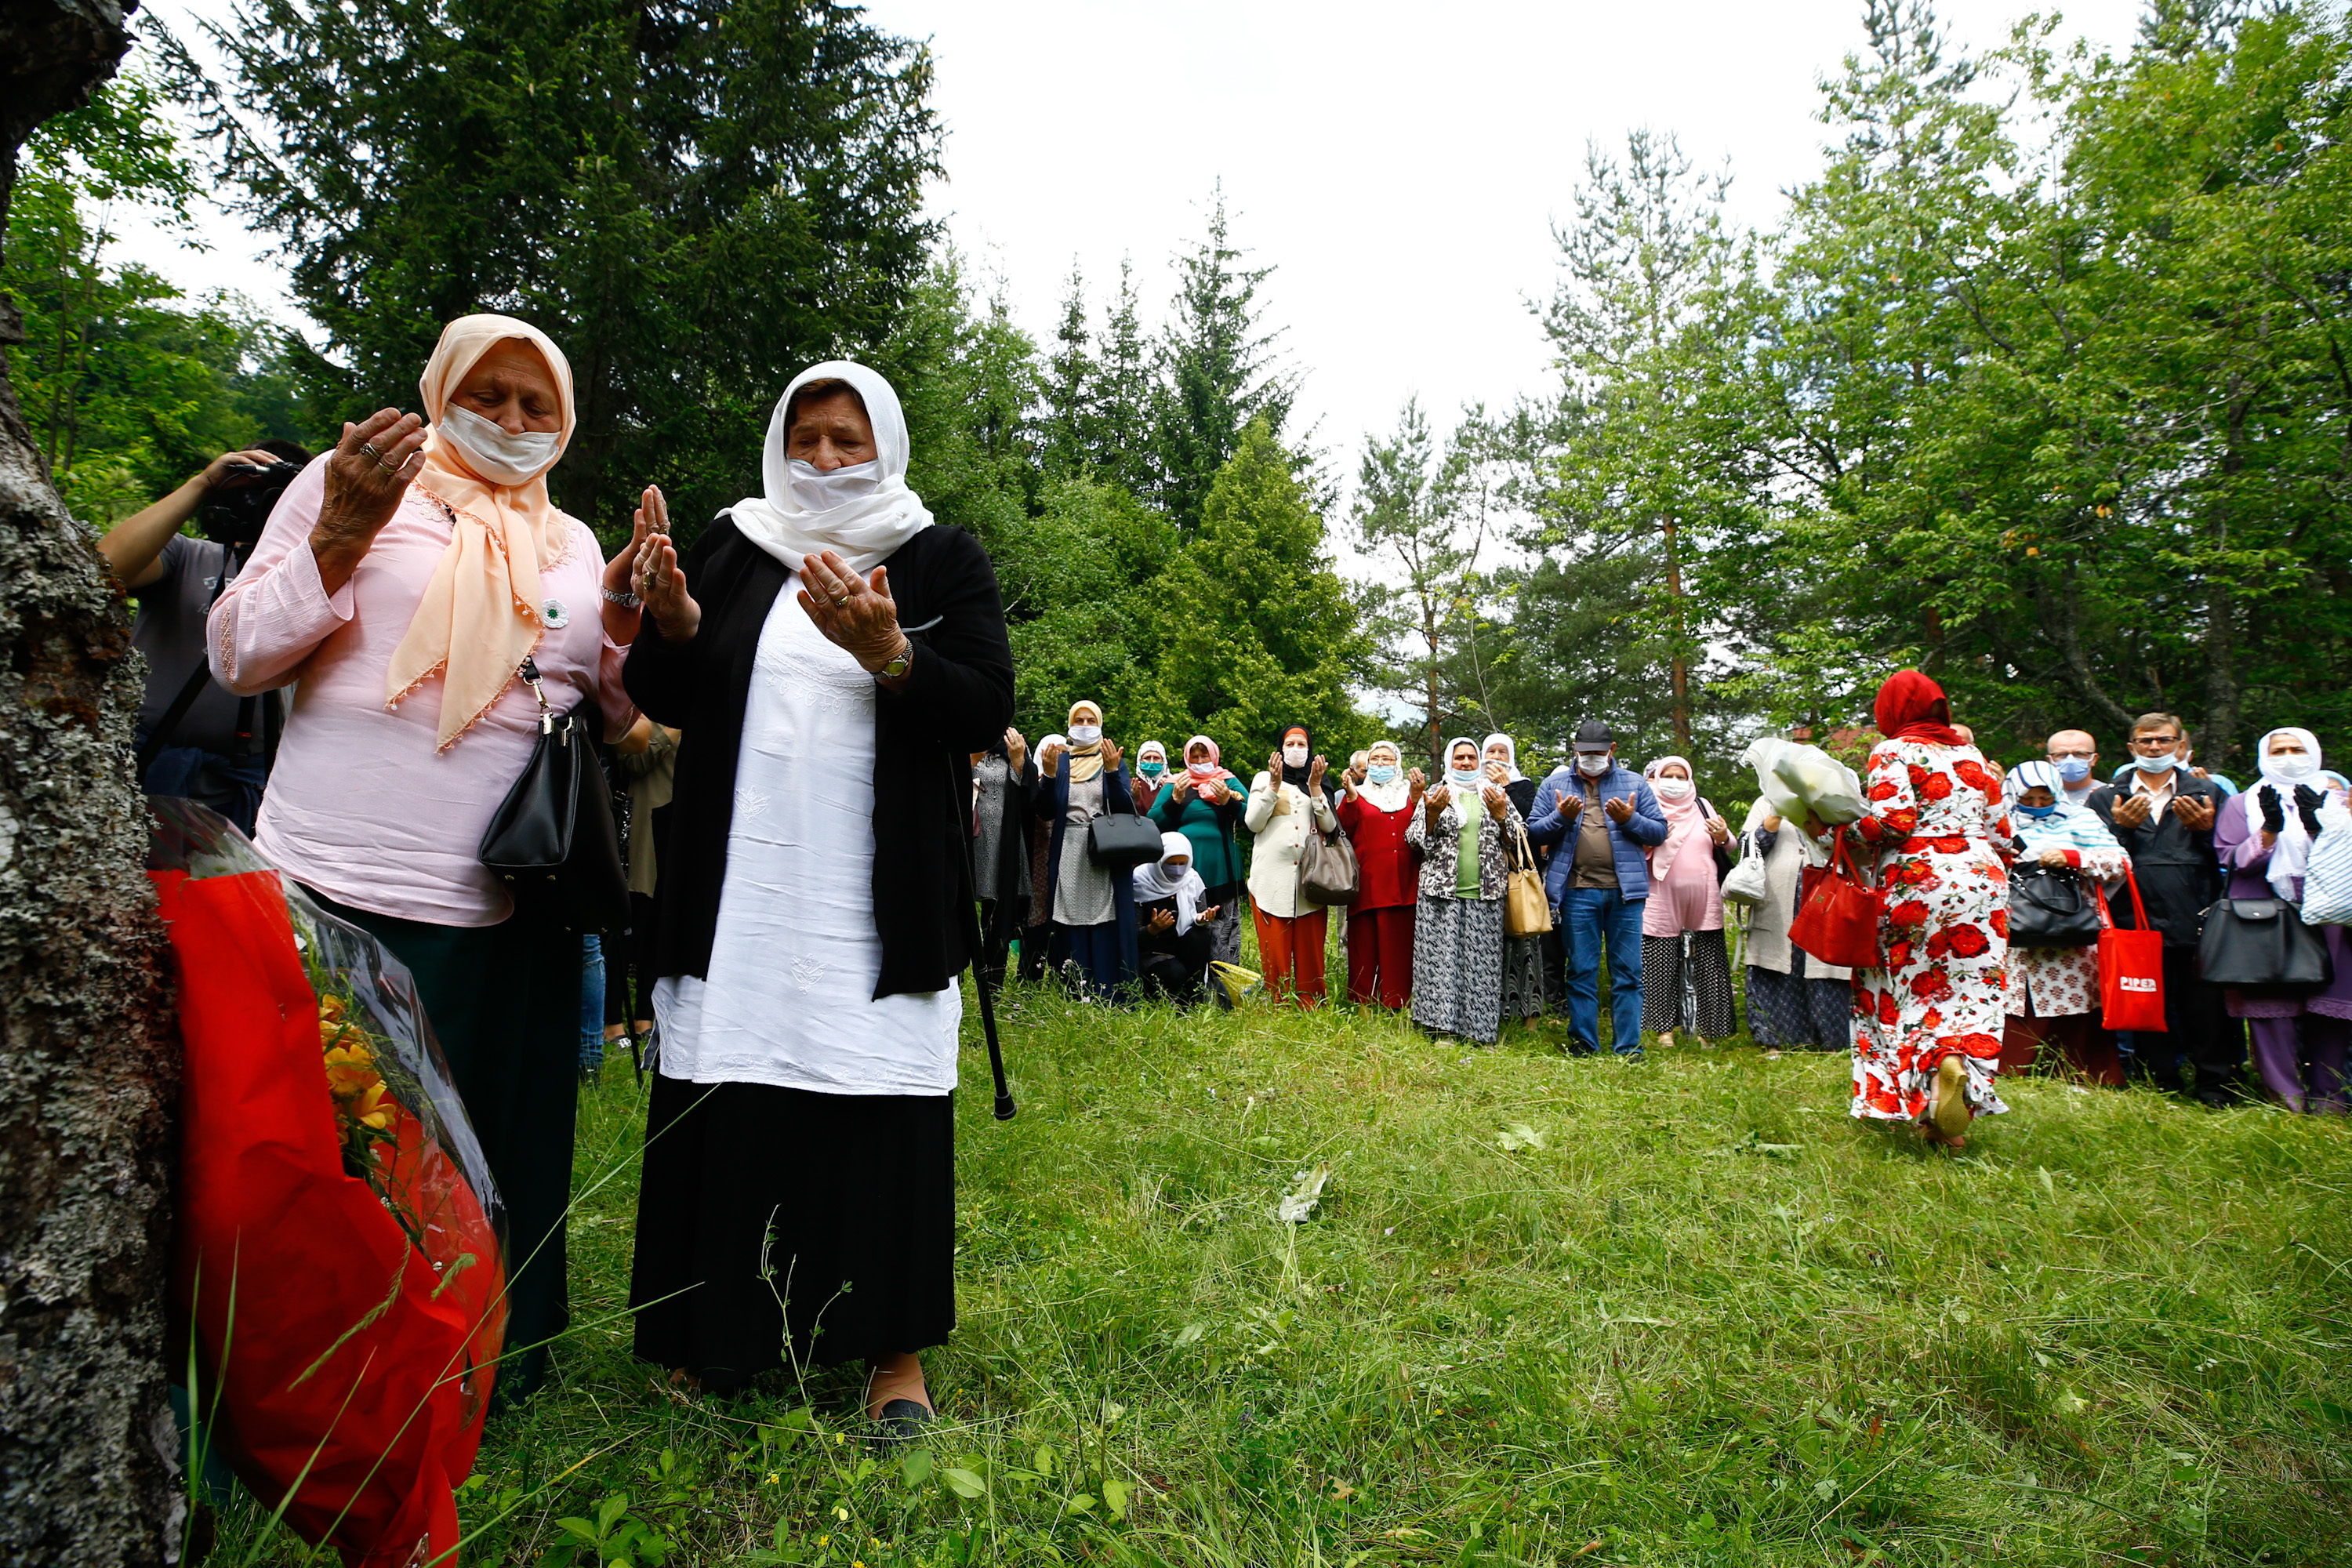 Commemoration for Srebrenica victims